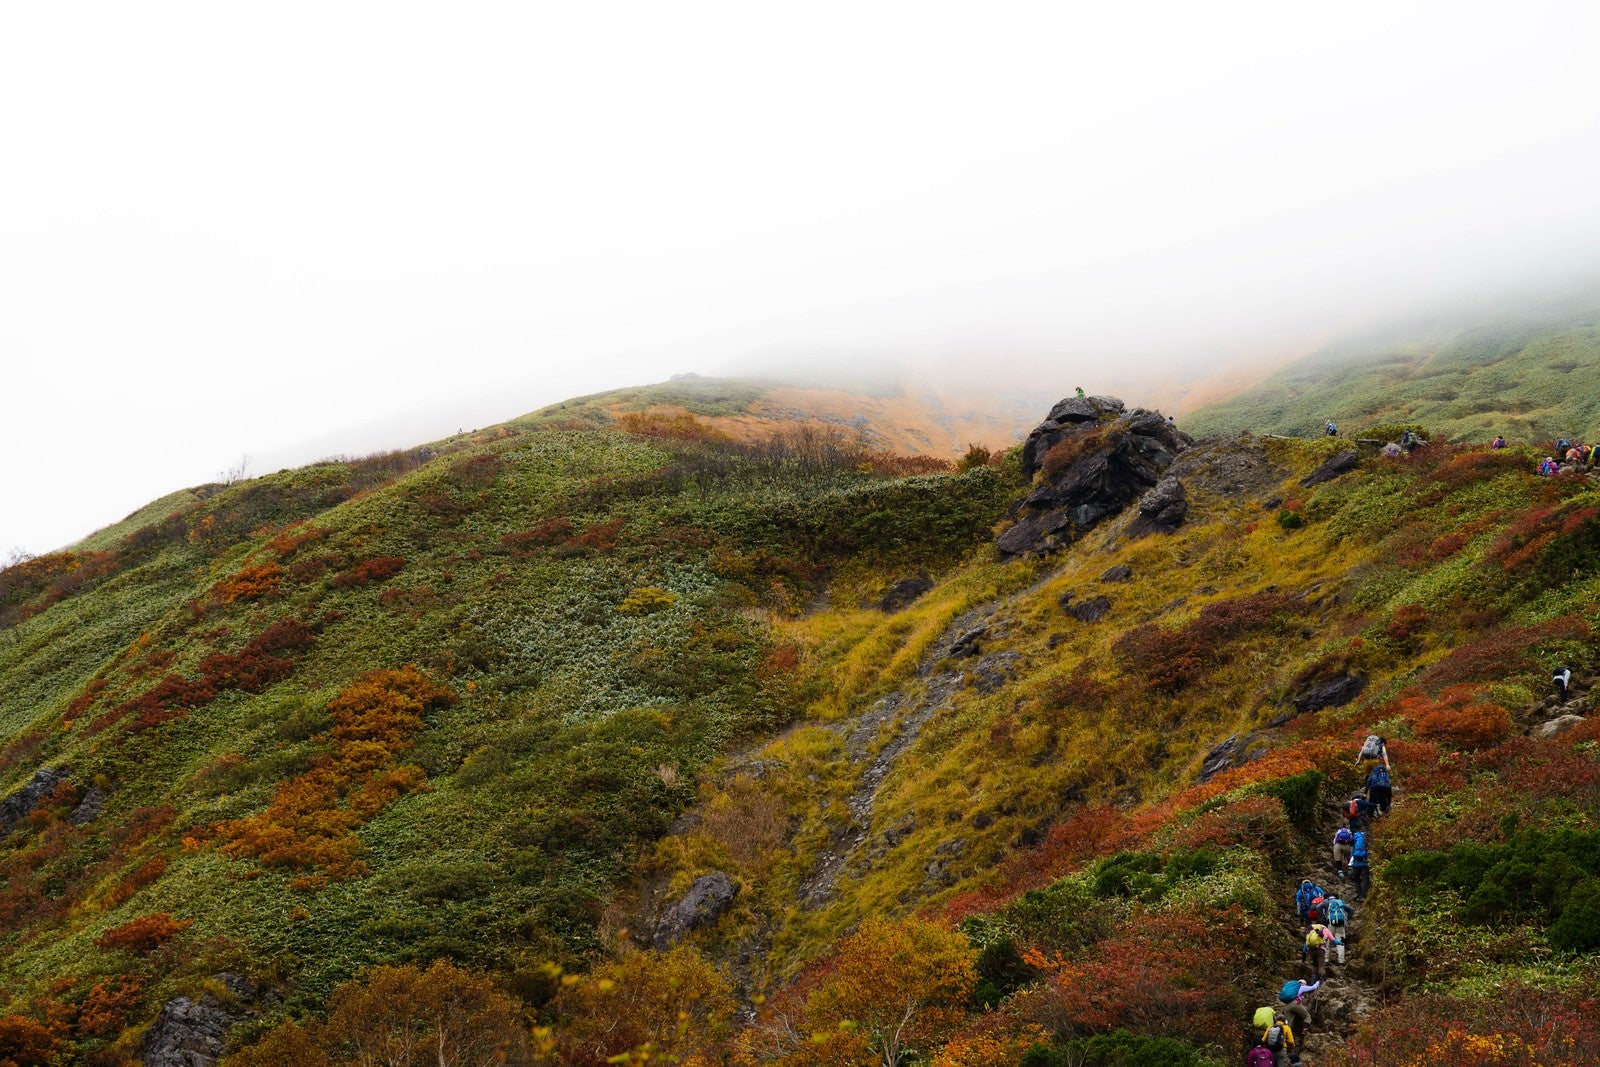 「黄葉する秋の谷川岳と登山者の姿」の写真